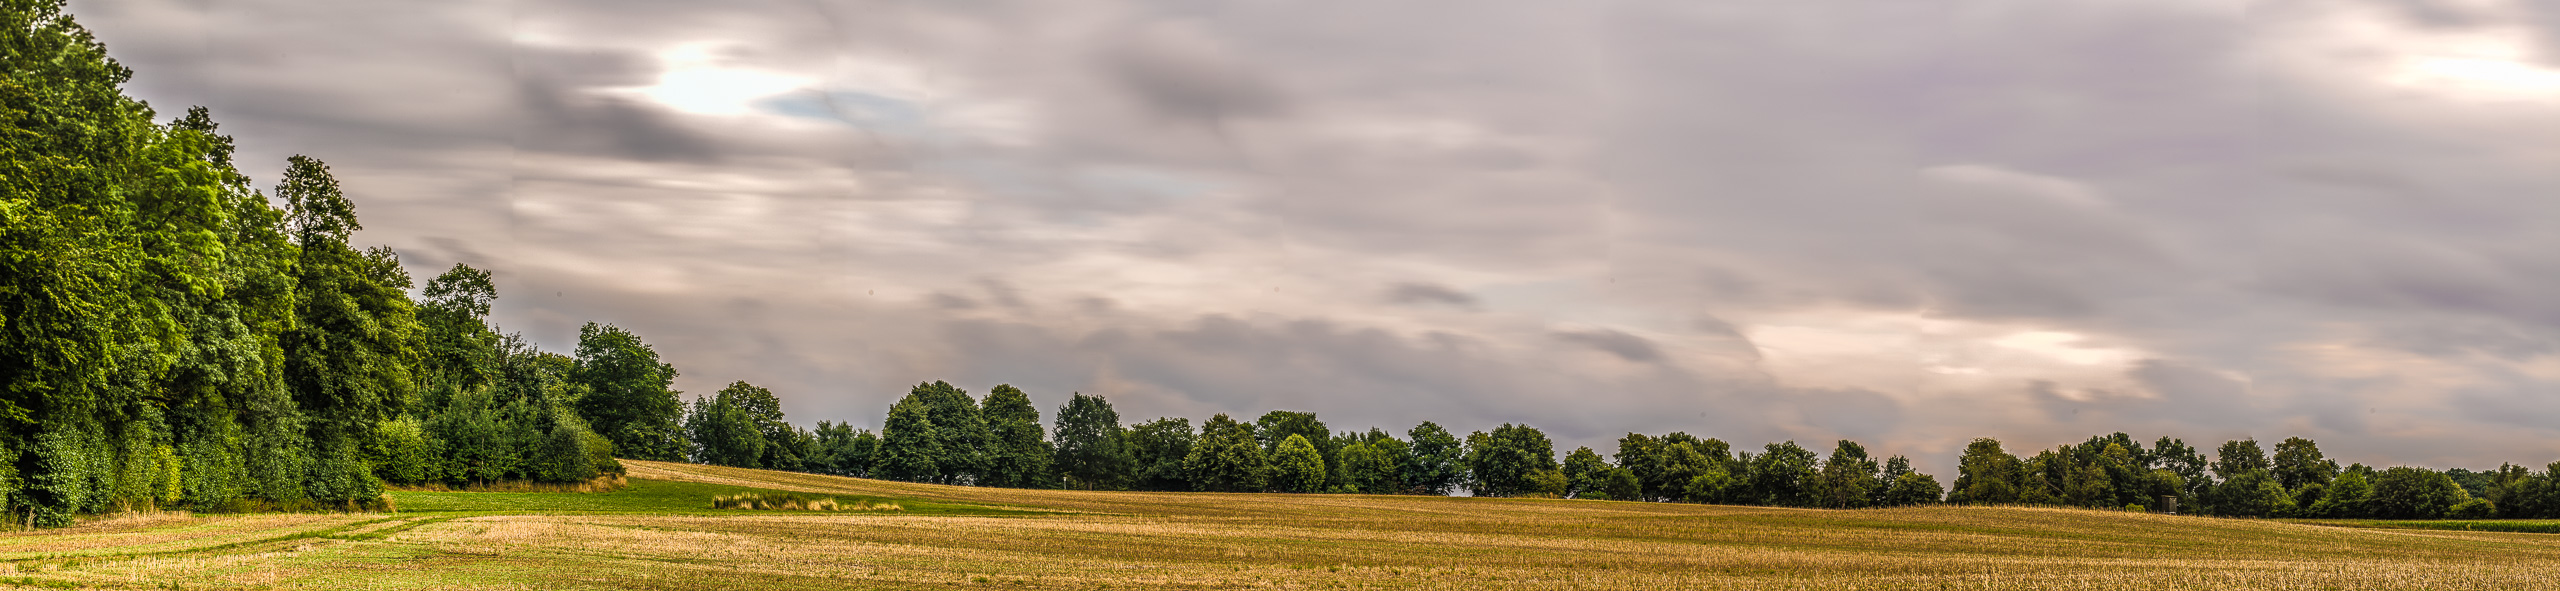 Ein abgeerntetes Feld , an zwei Seiten von LaubWald umgeben, unter dramatisch beleuchteten dichten Wolken